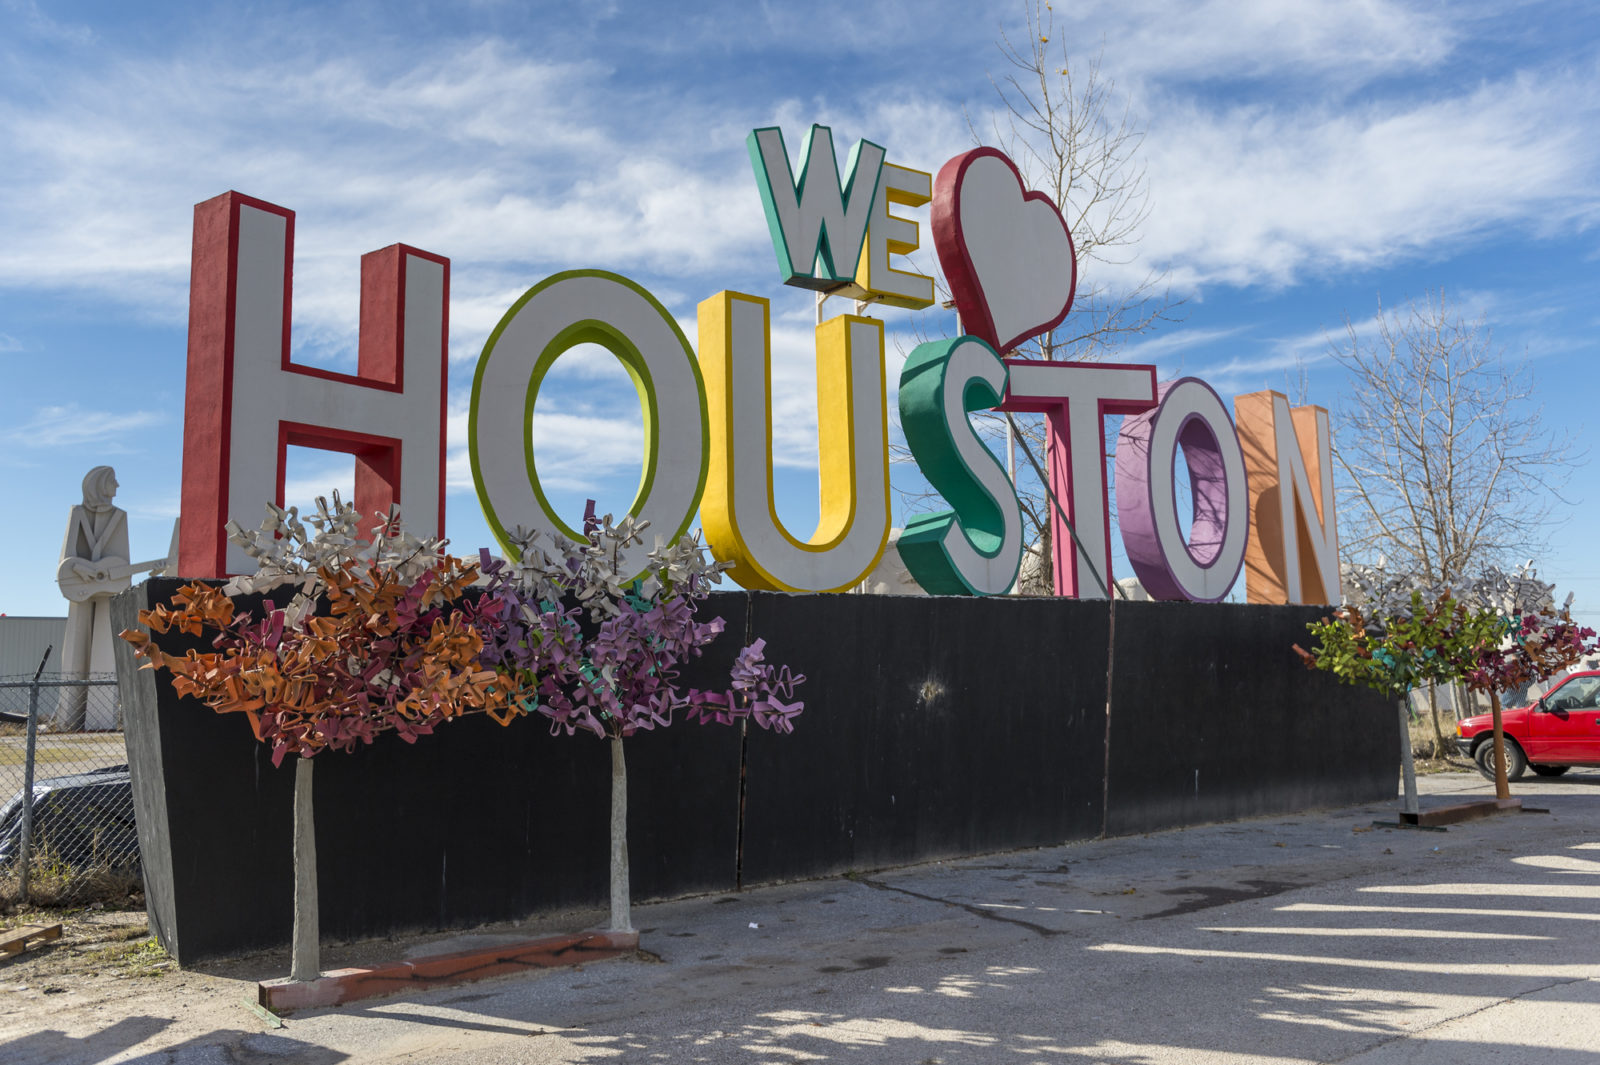 Houston Food Trucks and Landmarks